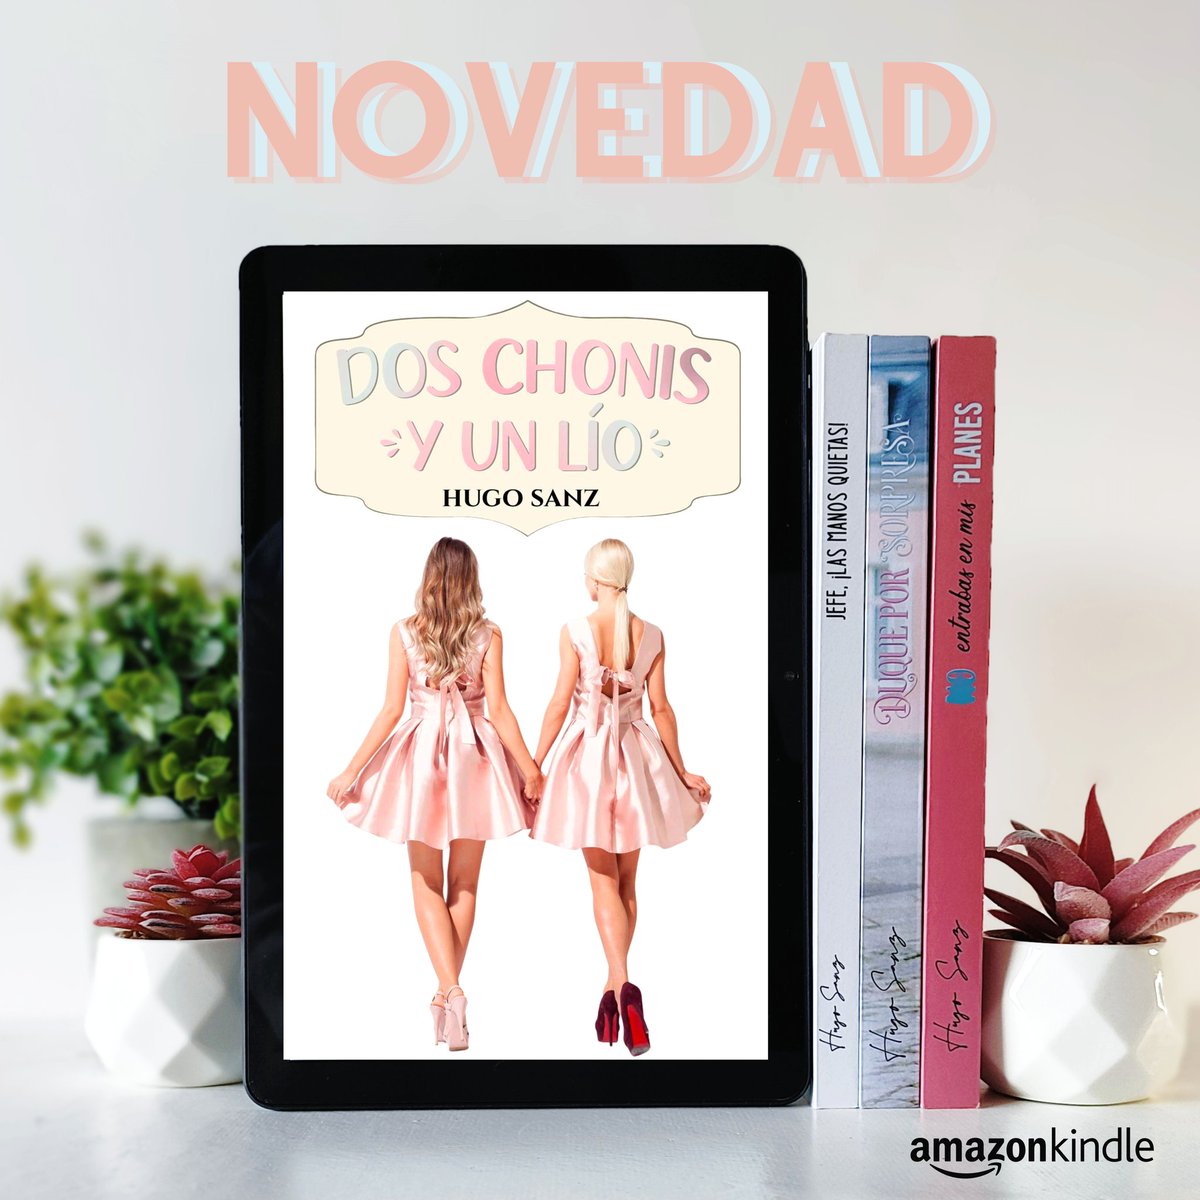 📣 💯 NOVEDAD 💯 📣

🖤 DOS CHONIS Y UN LÍO 🖤

📚📱👉🏼leer.la/B0CSWLRB85

𝑇𝑜𝑑𝑎𝑠 𝑙𝑎𝑠 #𝑛𝑜𝑣𝑒𝑙𝑎𝑠 𝑑𝑒𝑙 𝑎𝑢𝑡𝑜𝑟 🖤 relinks.me/HugoSanz

#Amazon #KindleUnlimited #ebook #queleer #escritor #LecturaRecomendada #amor #novelaromantica #HugoSanz